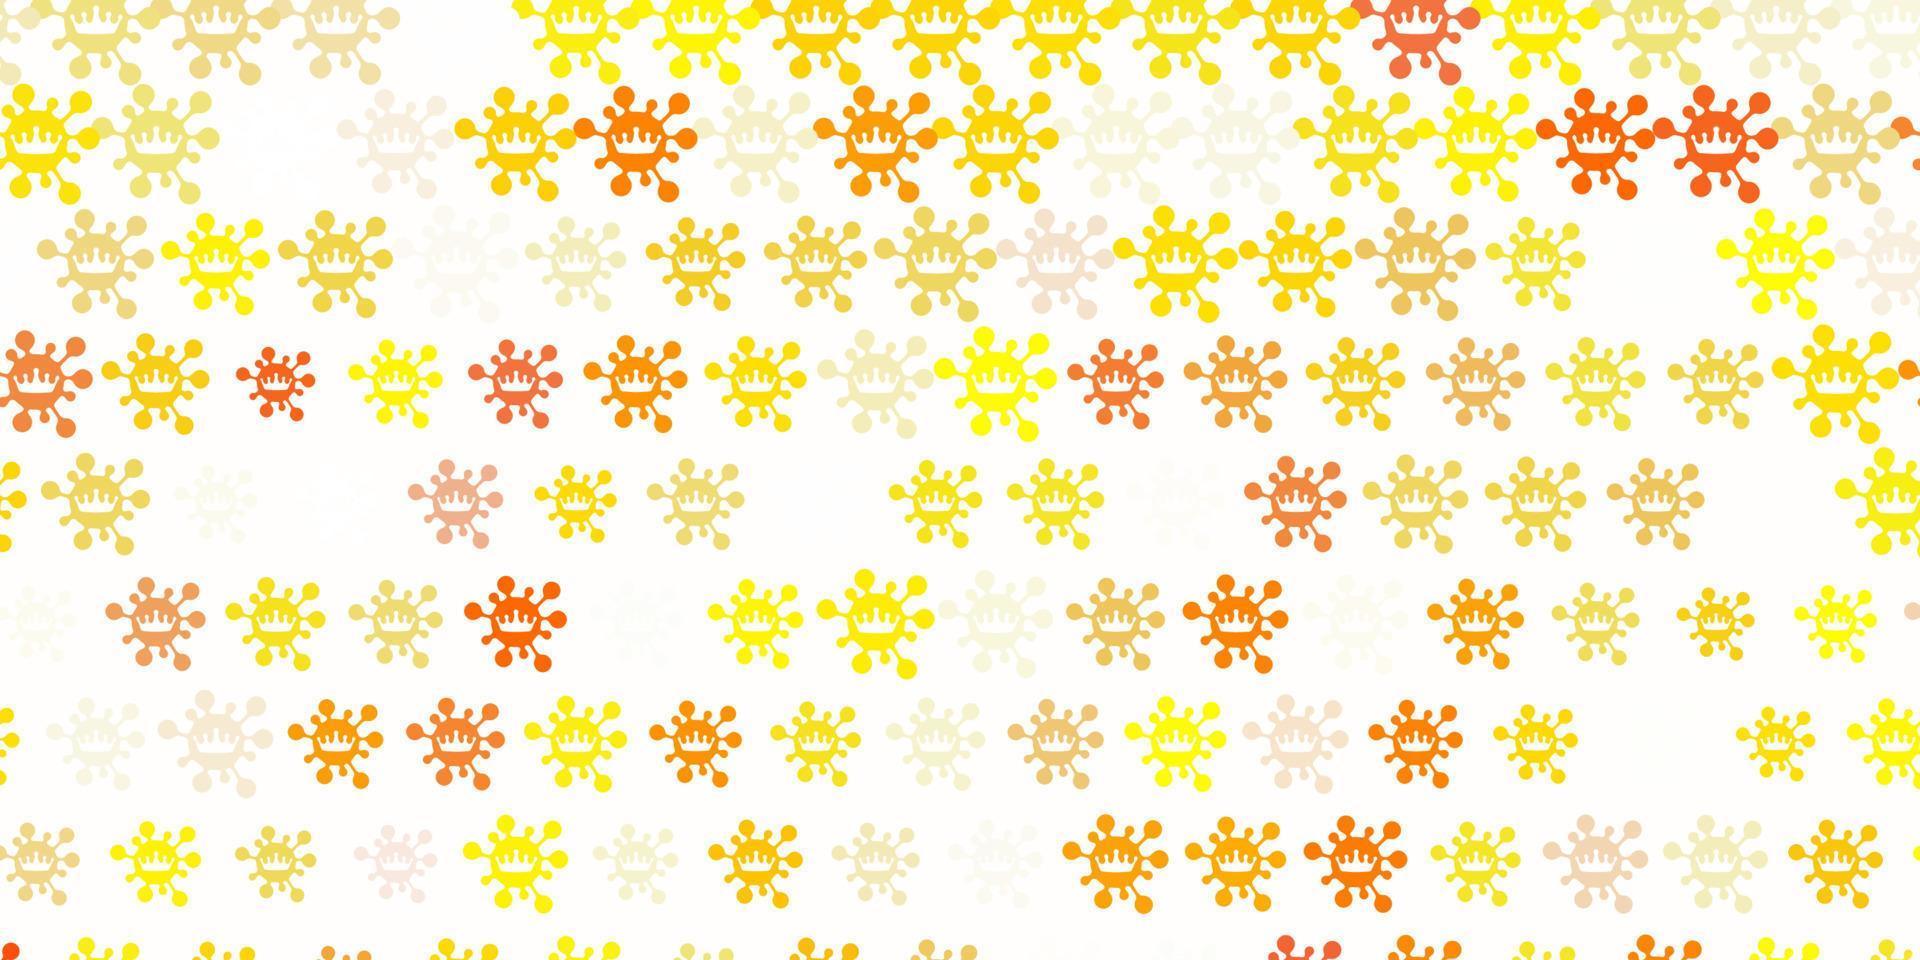 padrão de vetor amarelo claro com elementos de coronavírus.